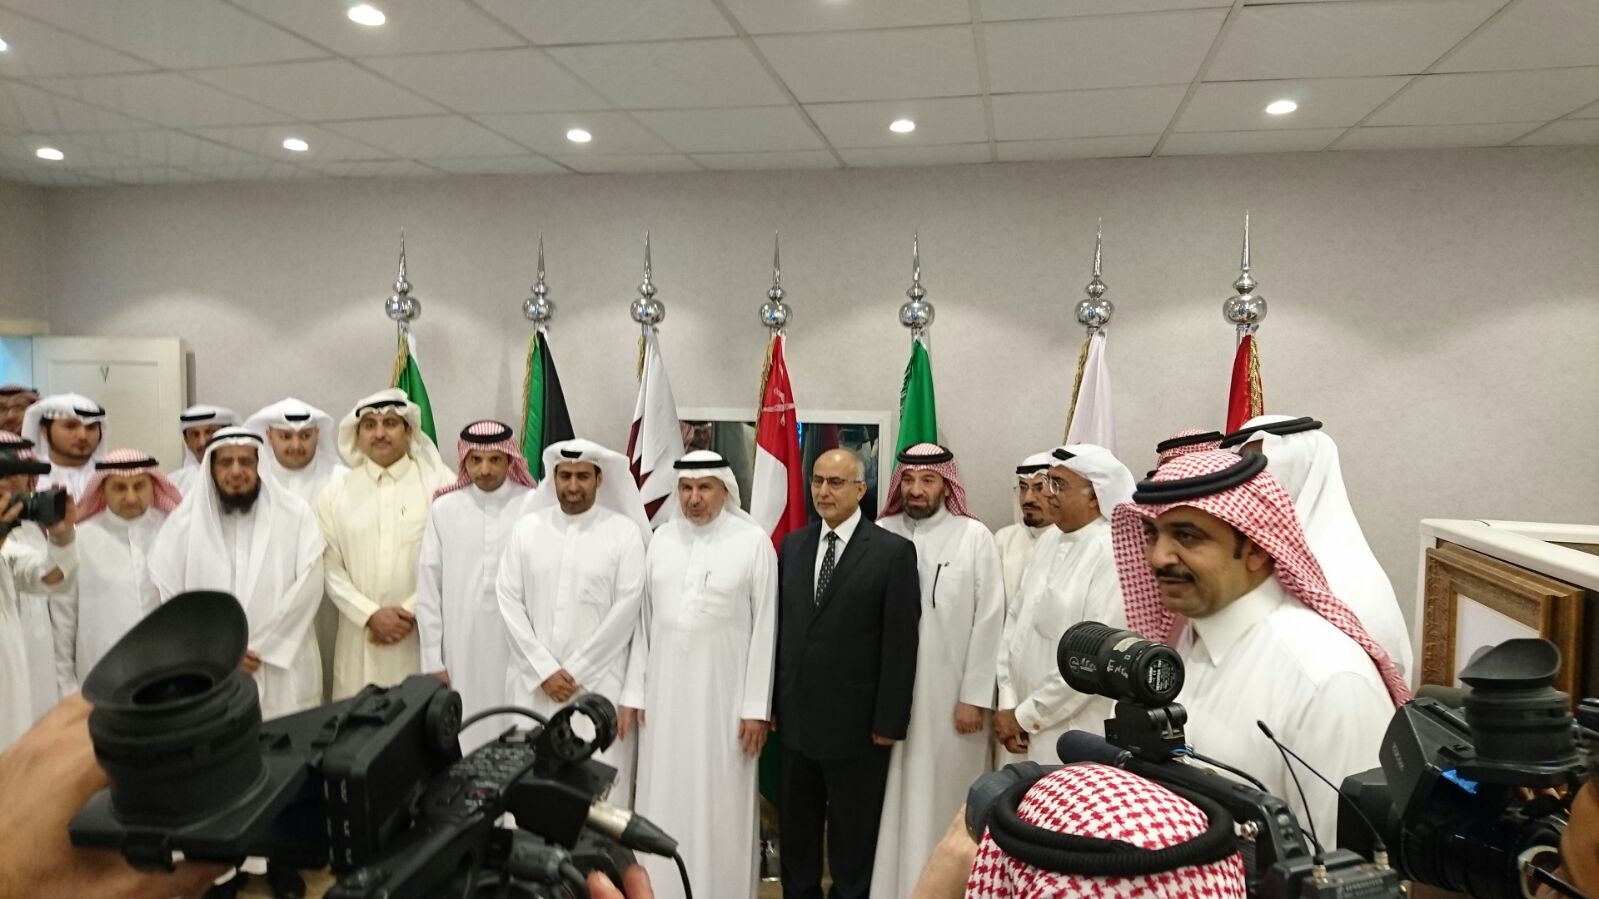 اجتماع خليجي بشأن اليمن يقر تسليم ملف الاقتصاد للإمارات والتعليم والكهرباء على قطر والغذاء على الكويت